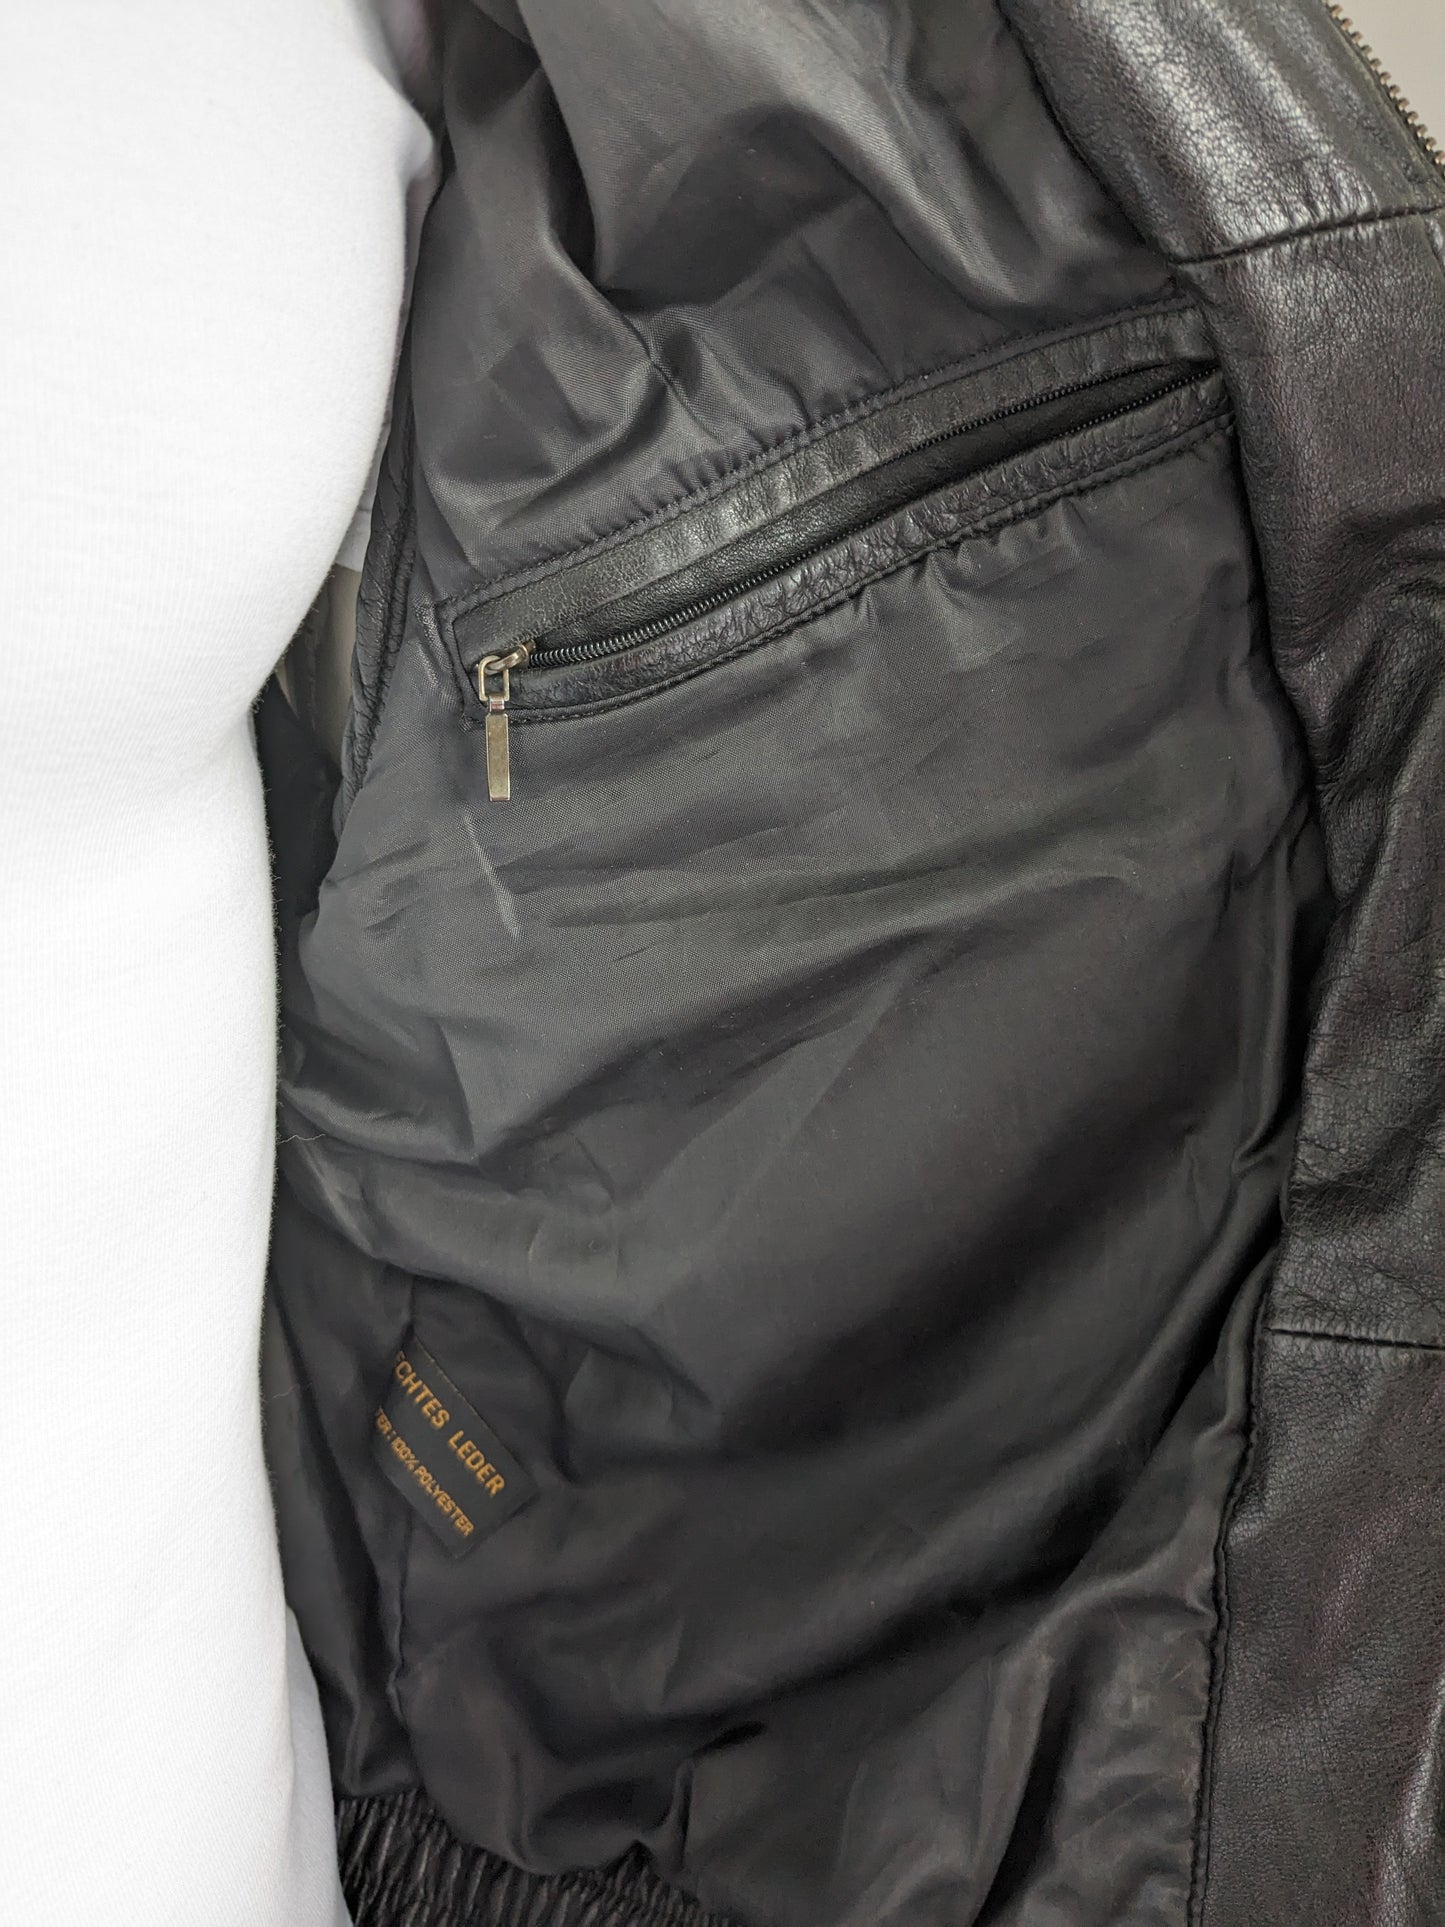 Chauffage de corps en cuir Prince vintage. Couleur noire. Taille 52 / L. avec 2 poches intérieures.